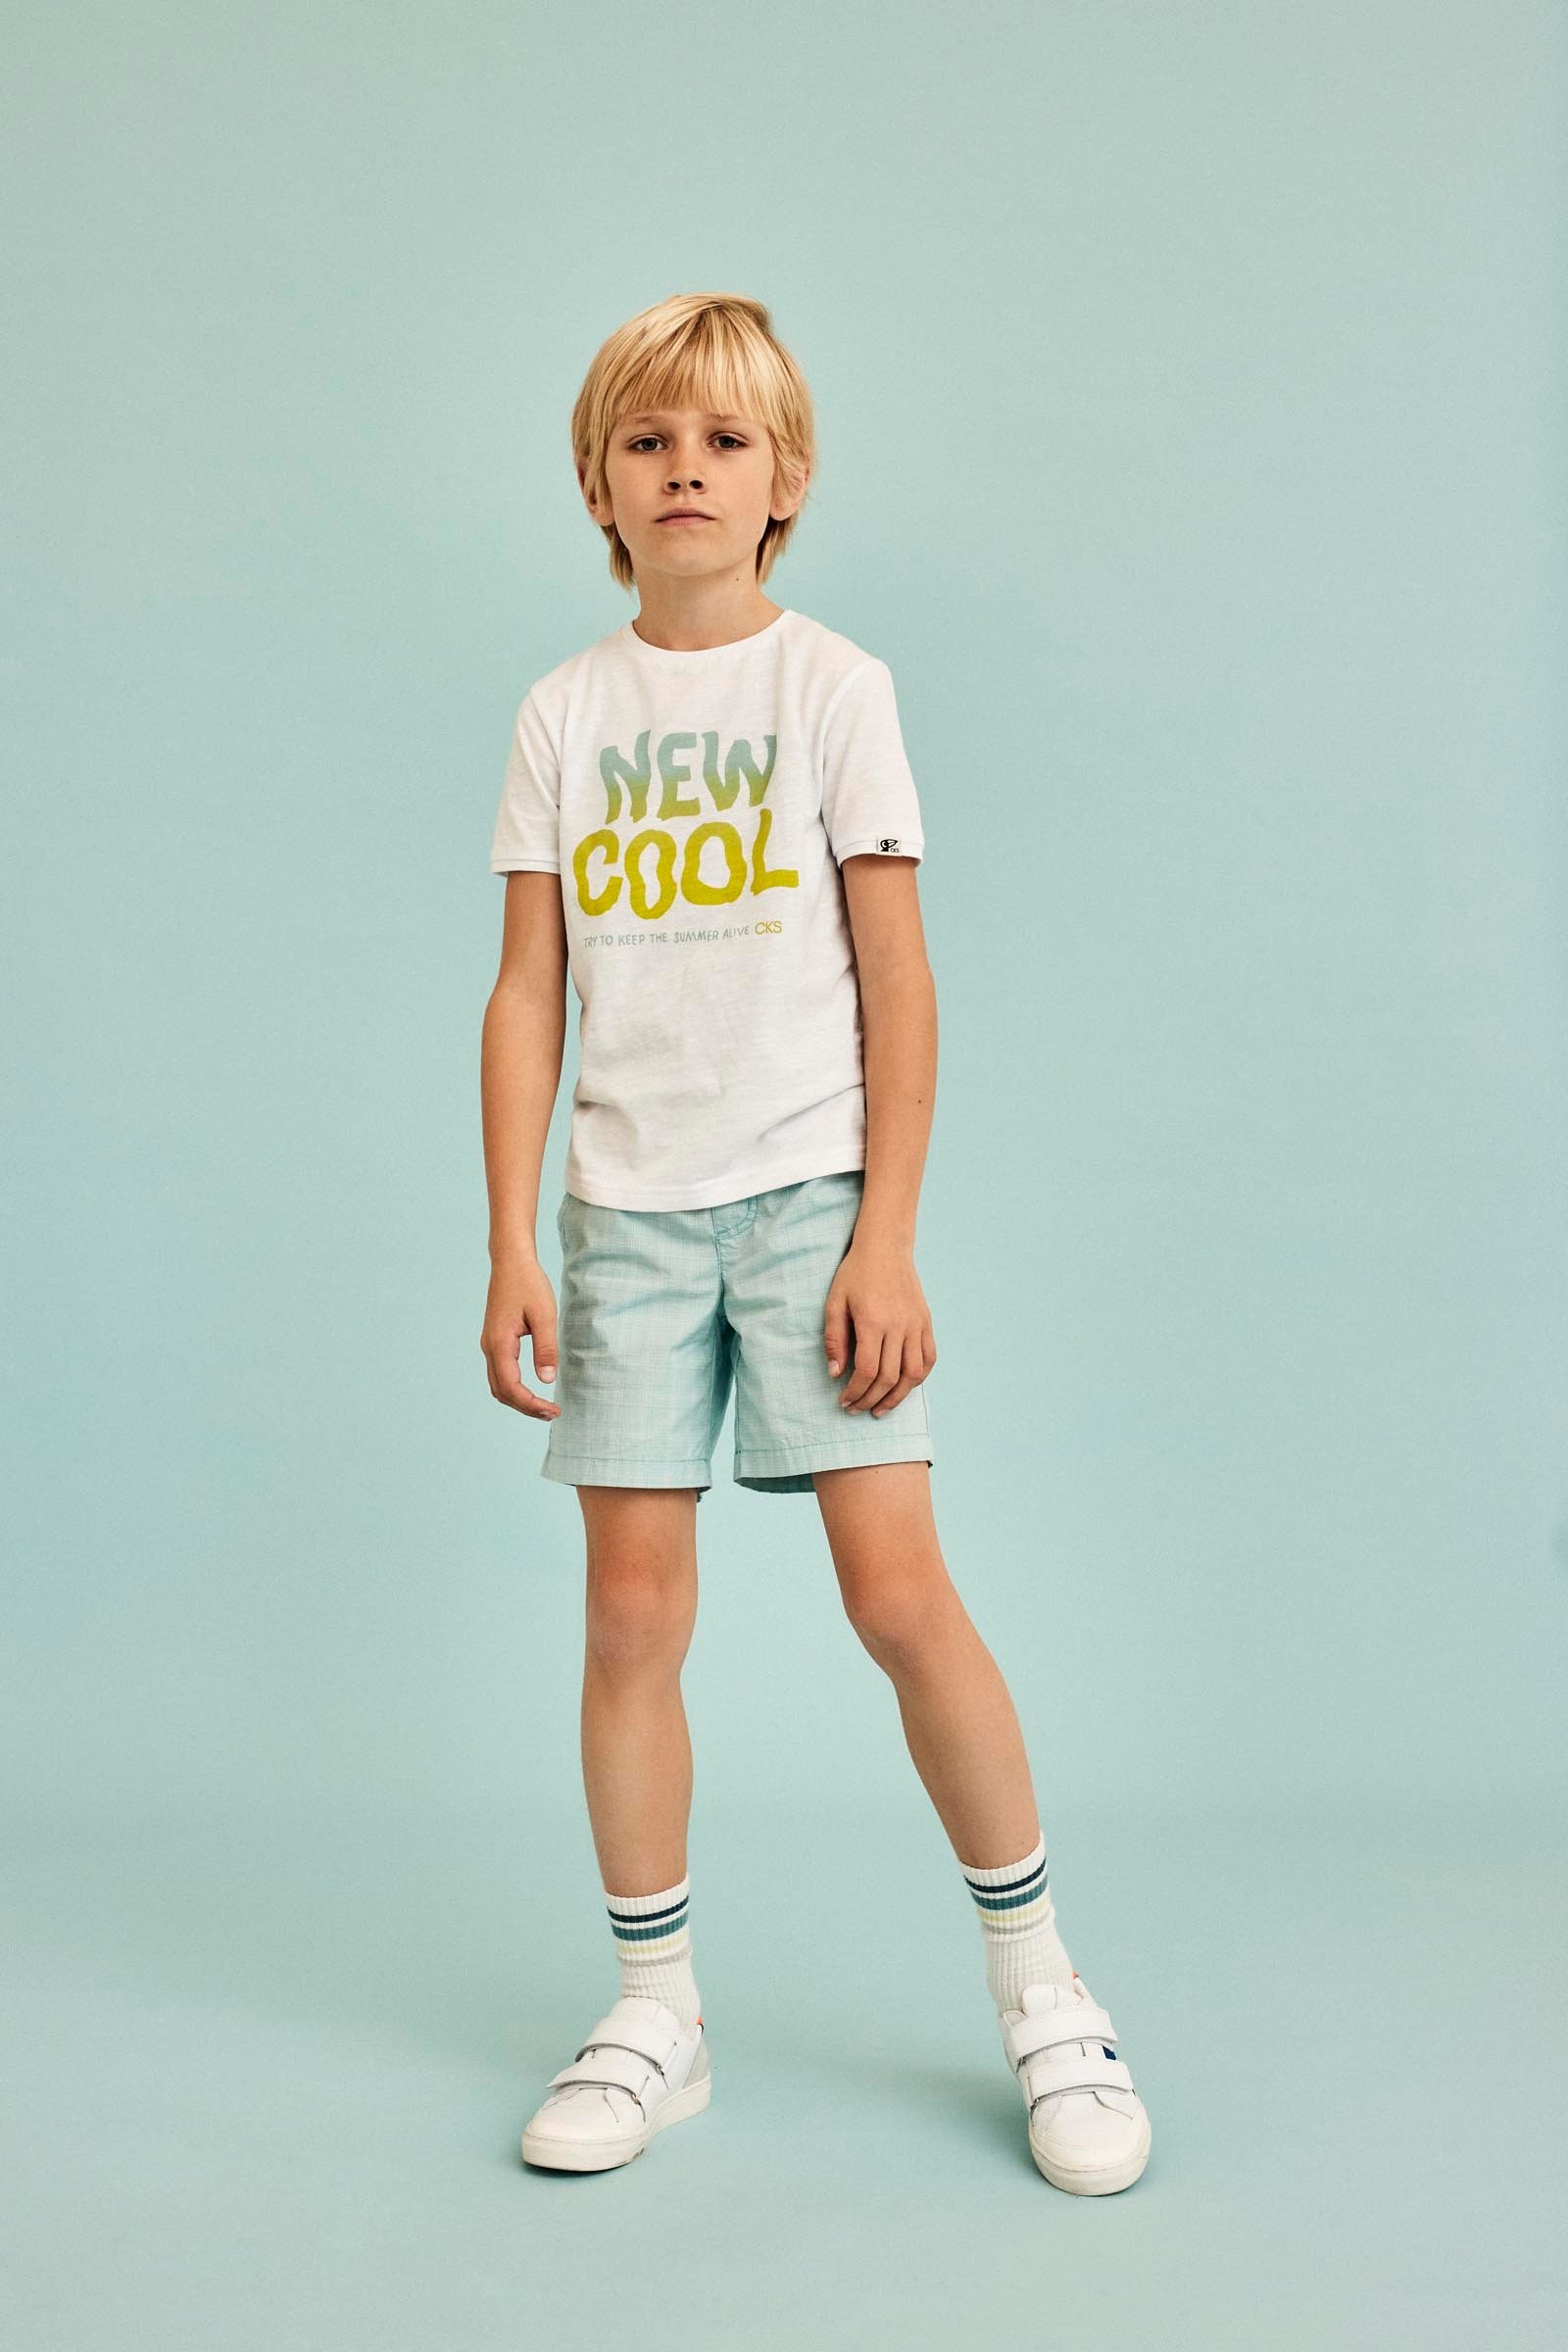 CKS Children's clothing | CKS Fashion